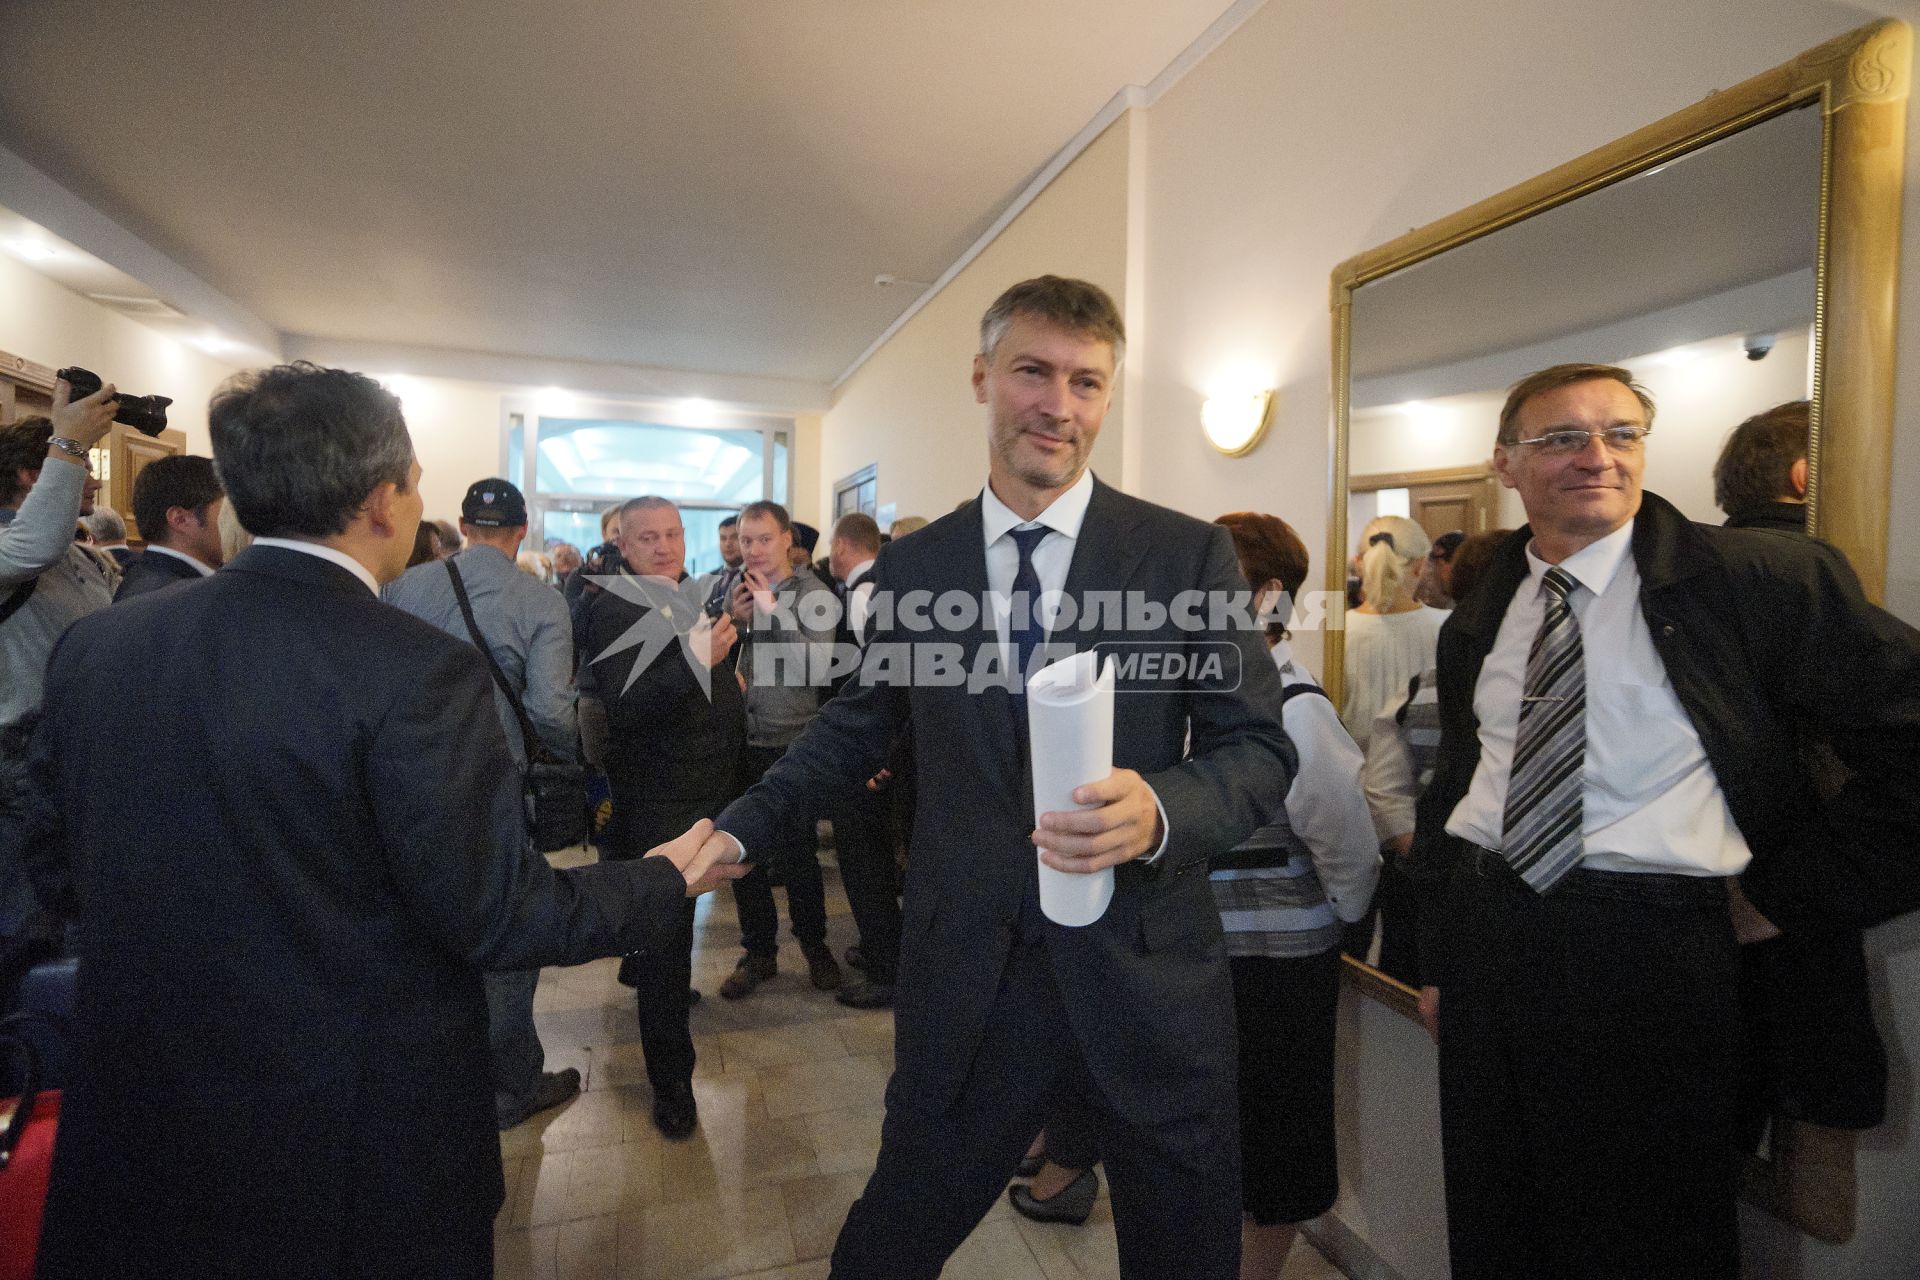 Мэр Екатеринбурга Евгений Ройзман приехал в мэрию на первое заседание Городской Думы нового созыва.